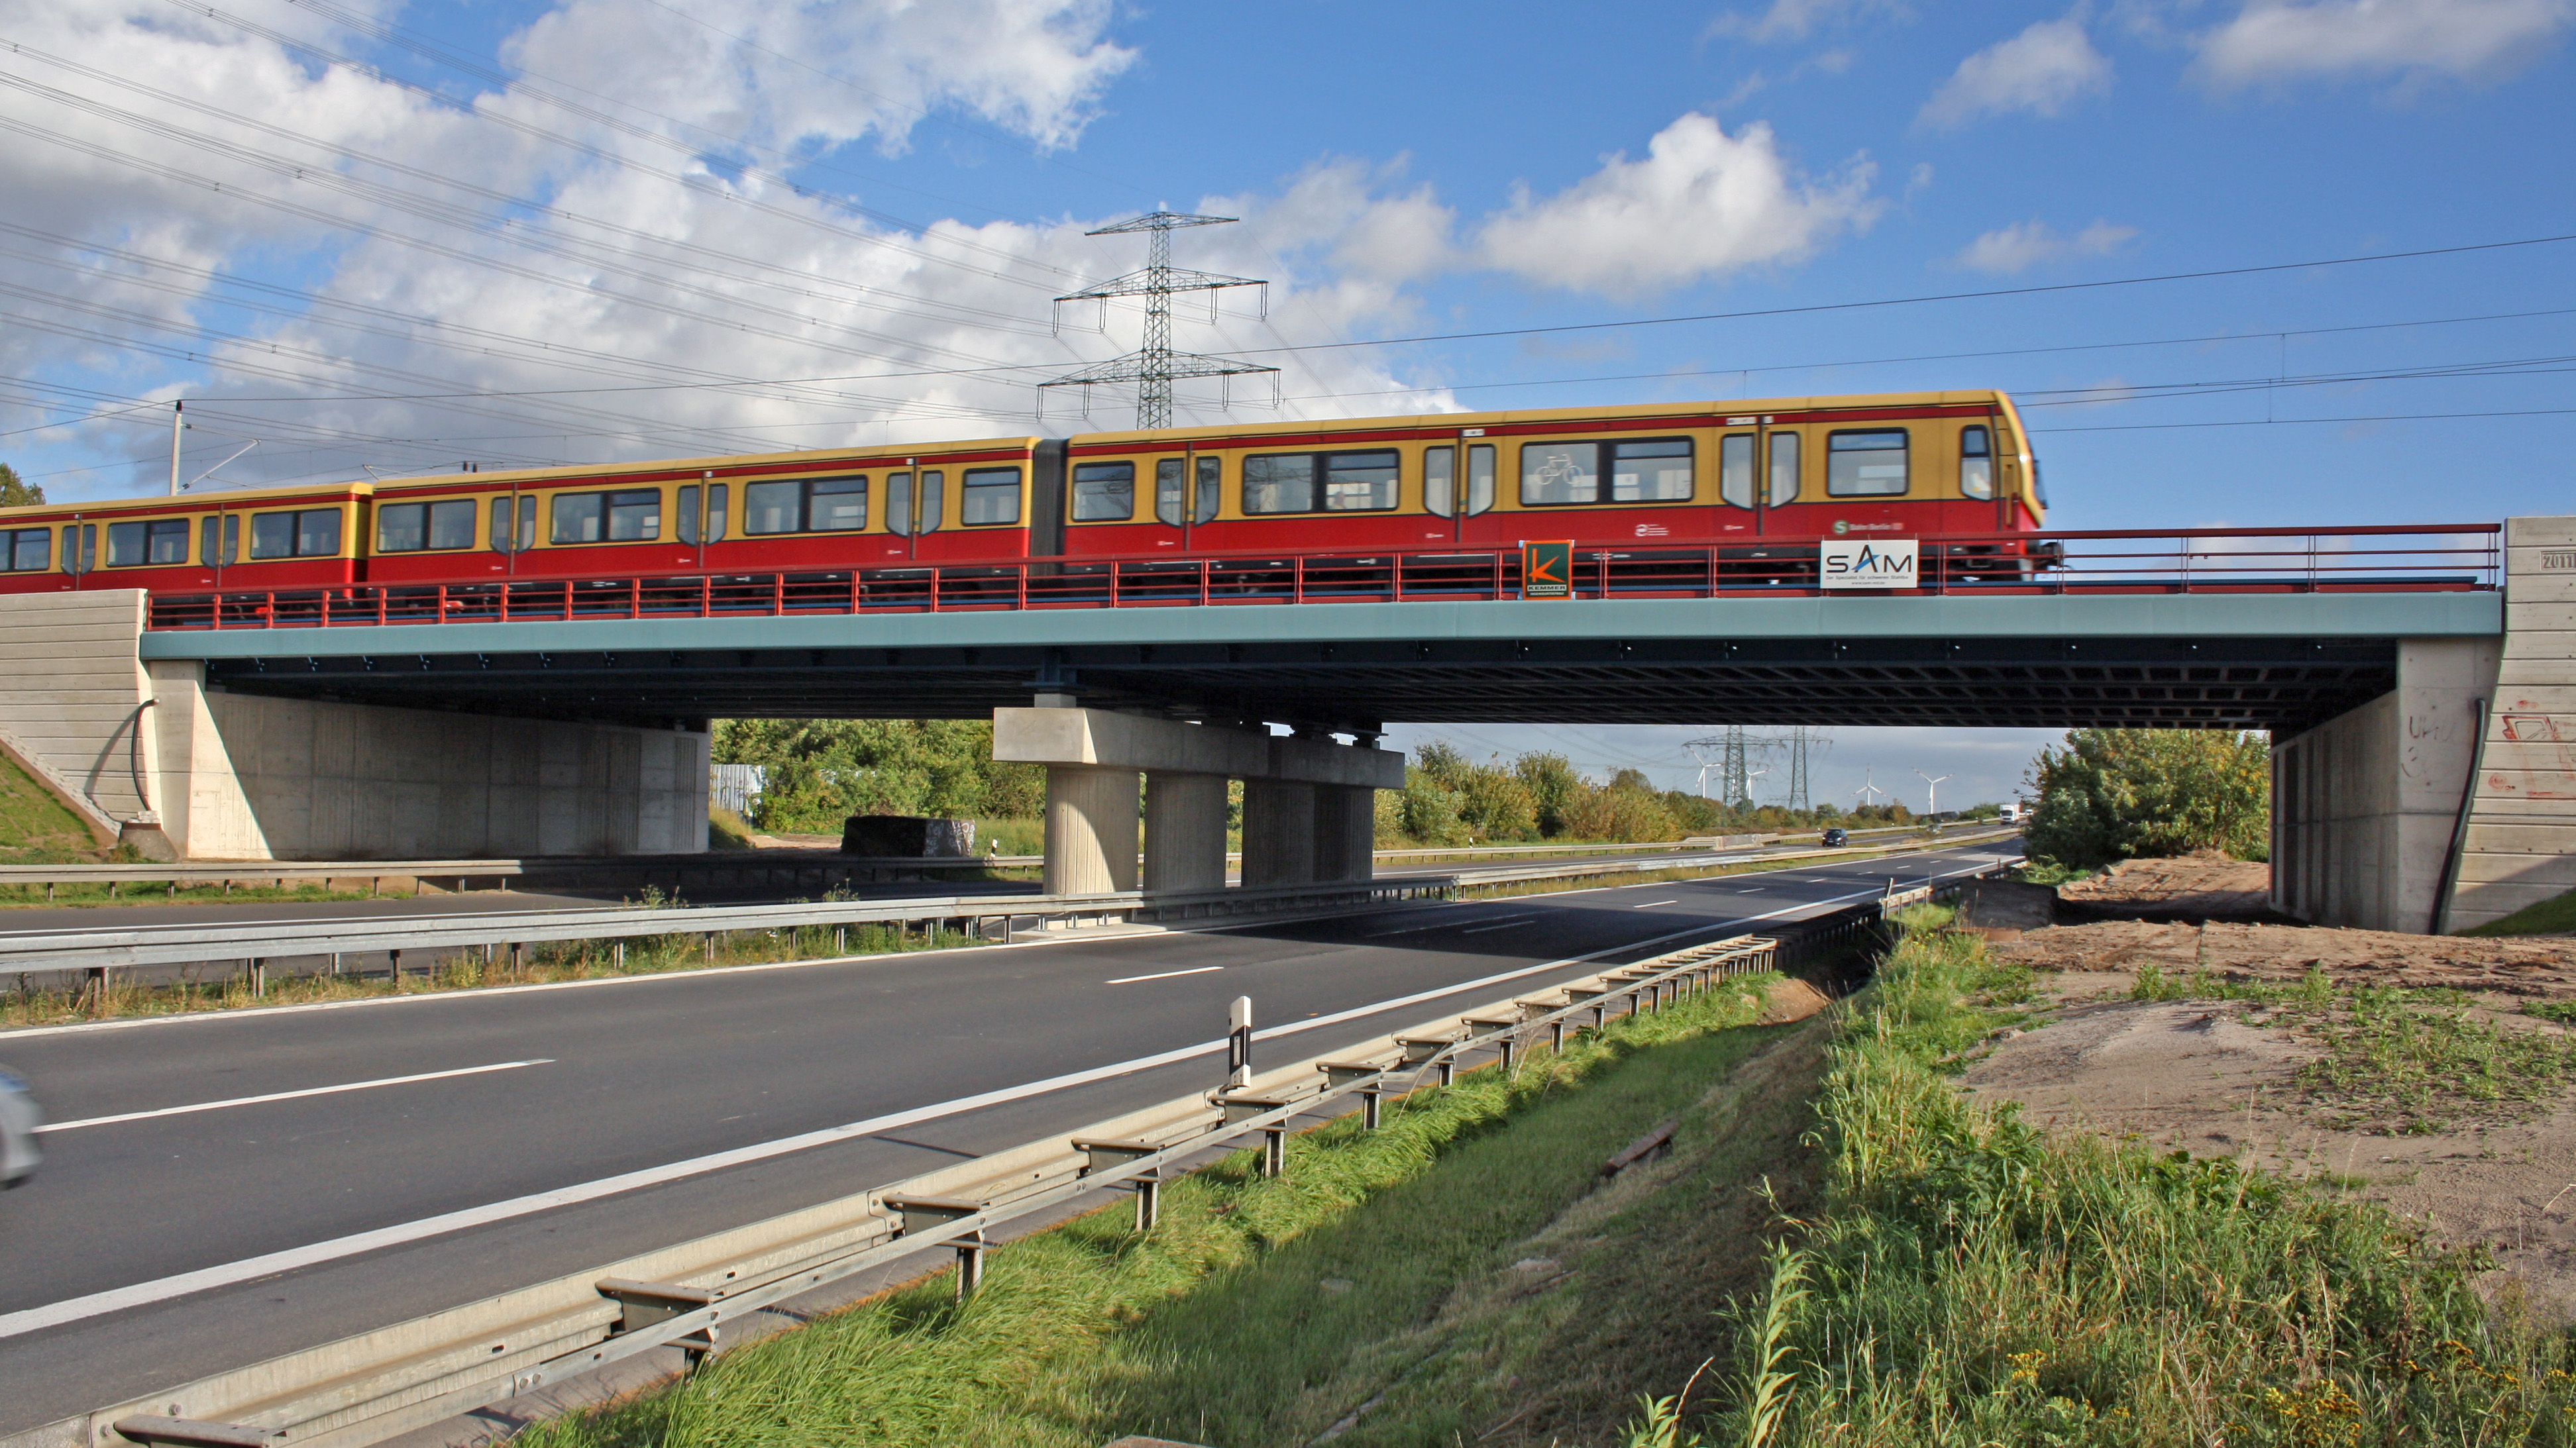 EÜ Fern- und S-Bahn über BAB A10, BW 88Ü4, Berlin